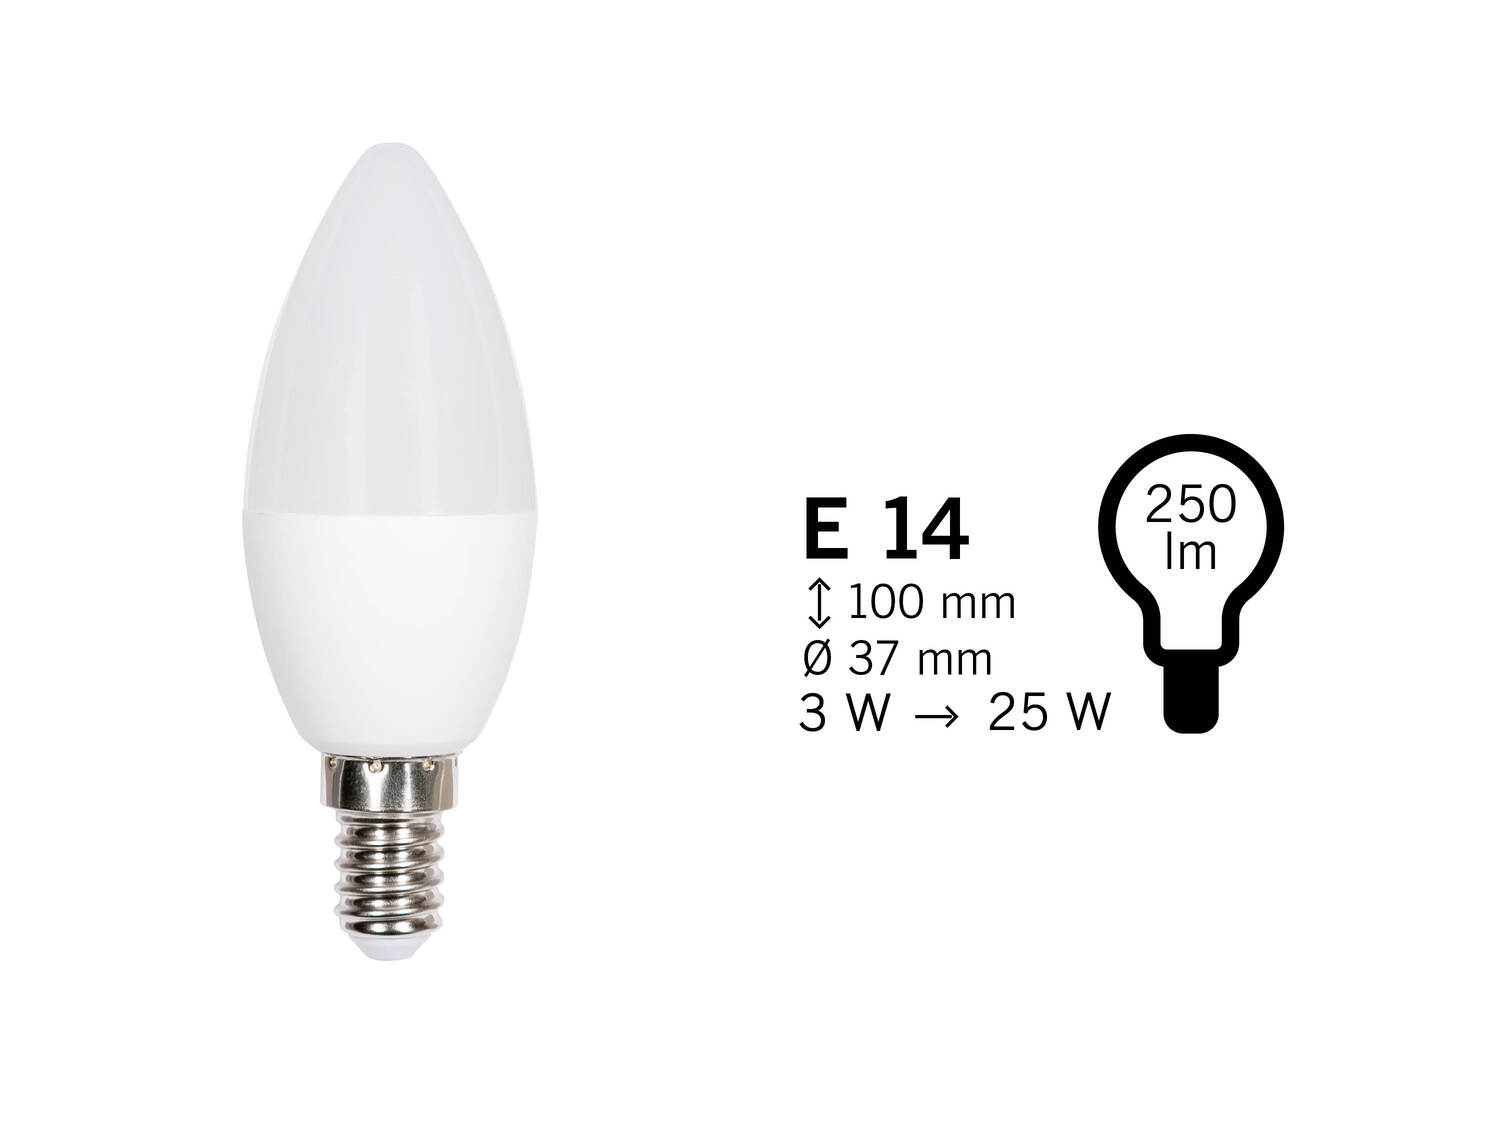 Żarówka LED Livarno, cena 4,99 PLN 
4 wzory 
- klasa energetyczna A+
 
Opis

- ...